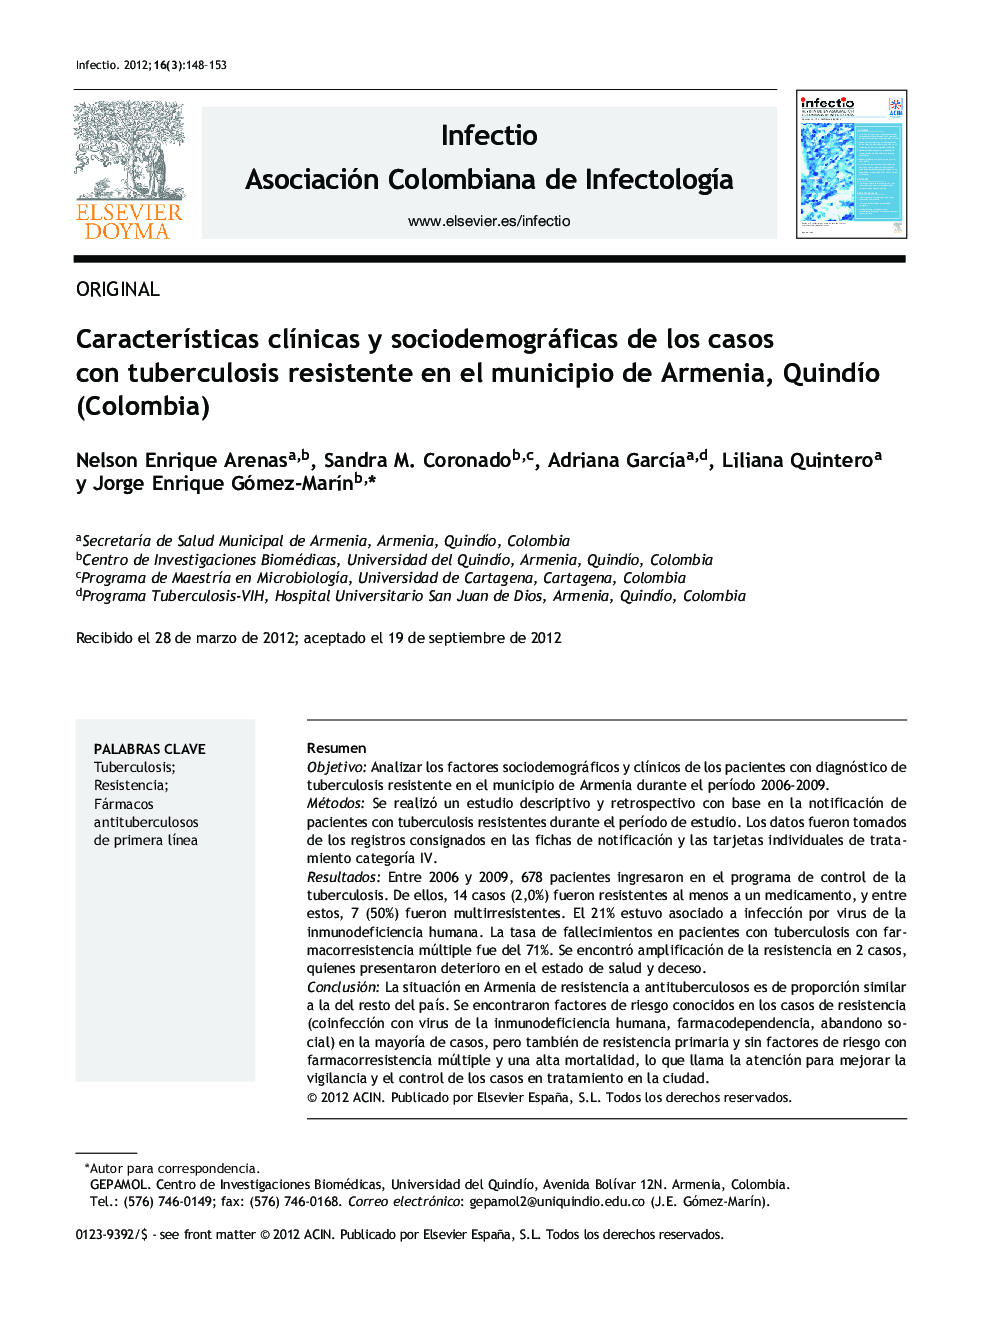 Características clínicas y sociodemográficas de los casos con tuberculosis resistente en el municipio de Armenia, Quindío (Colombia)